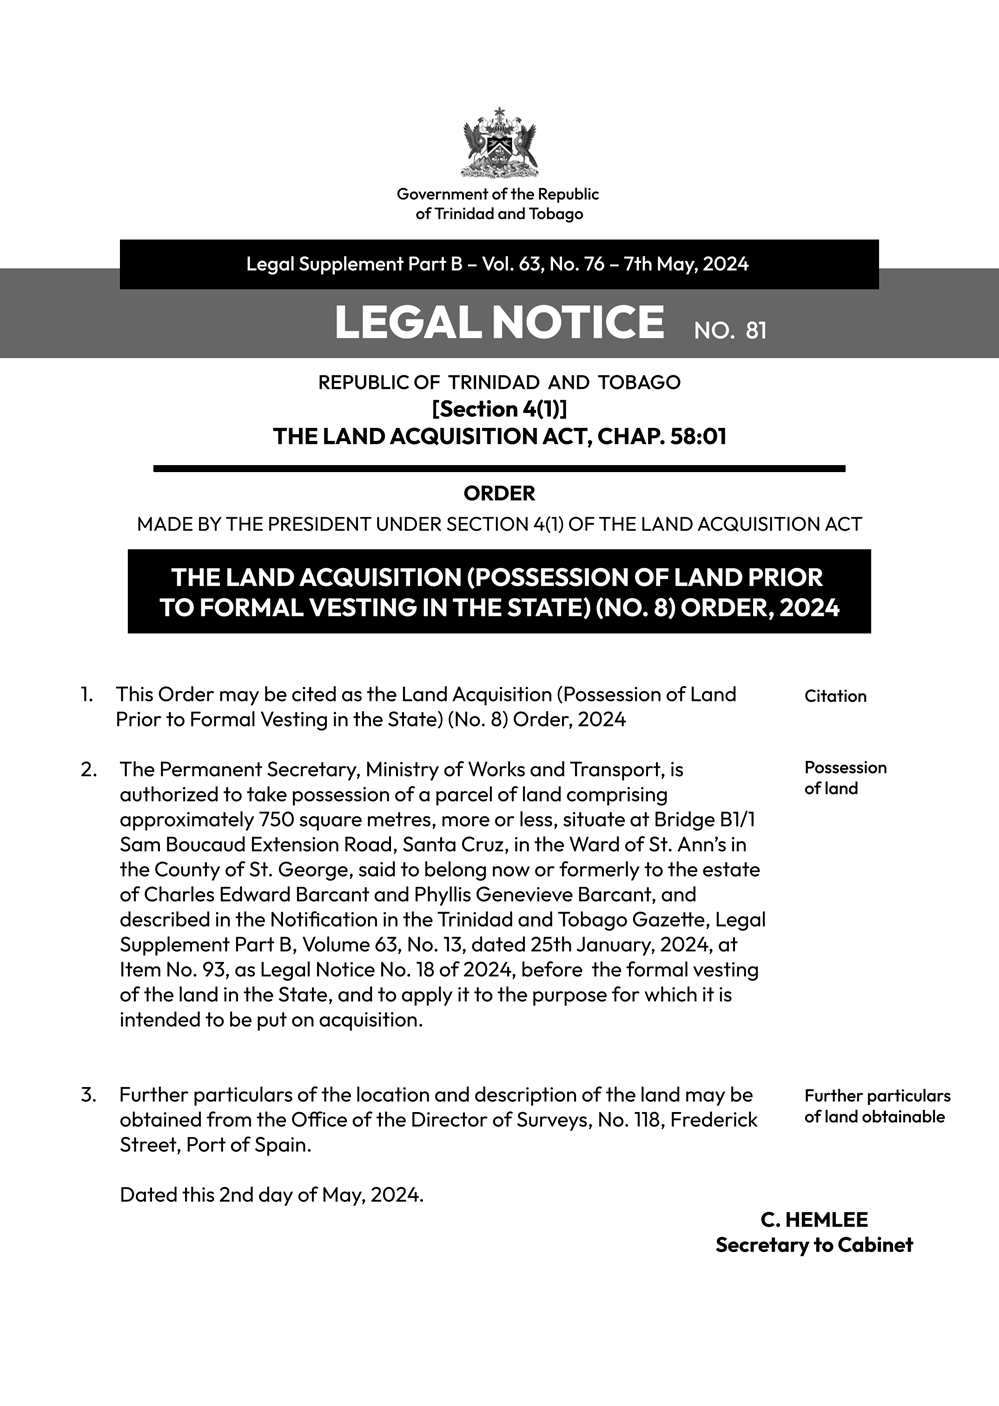 LEGAL-Notice-Land-Acquisition-81.png